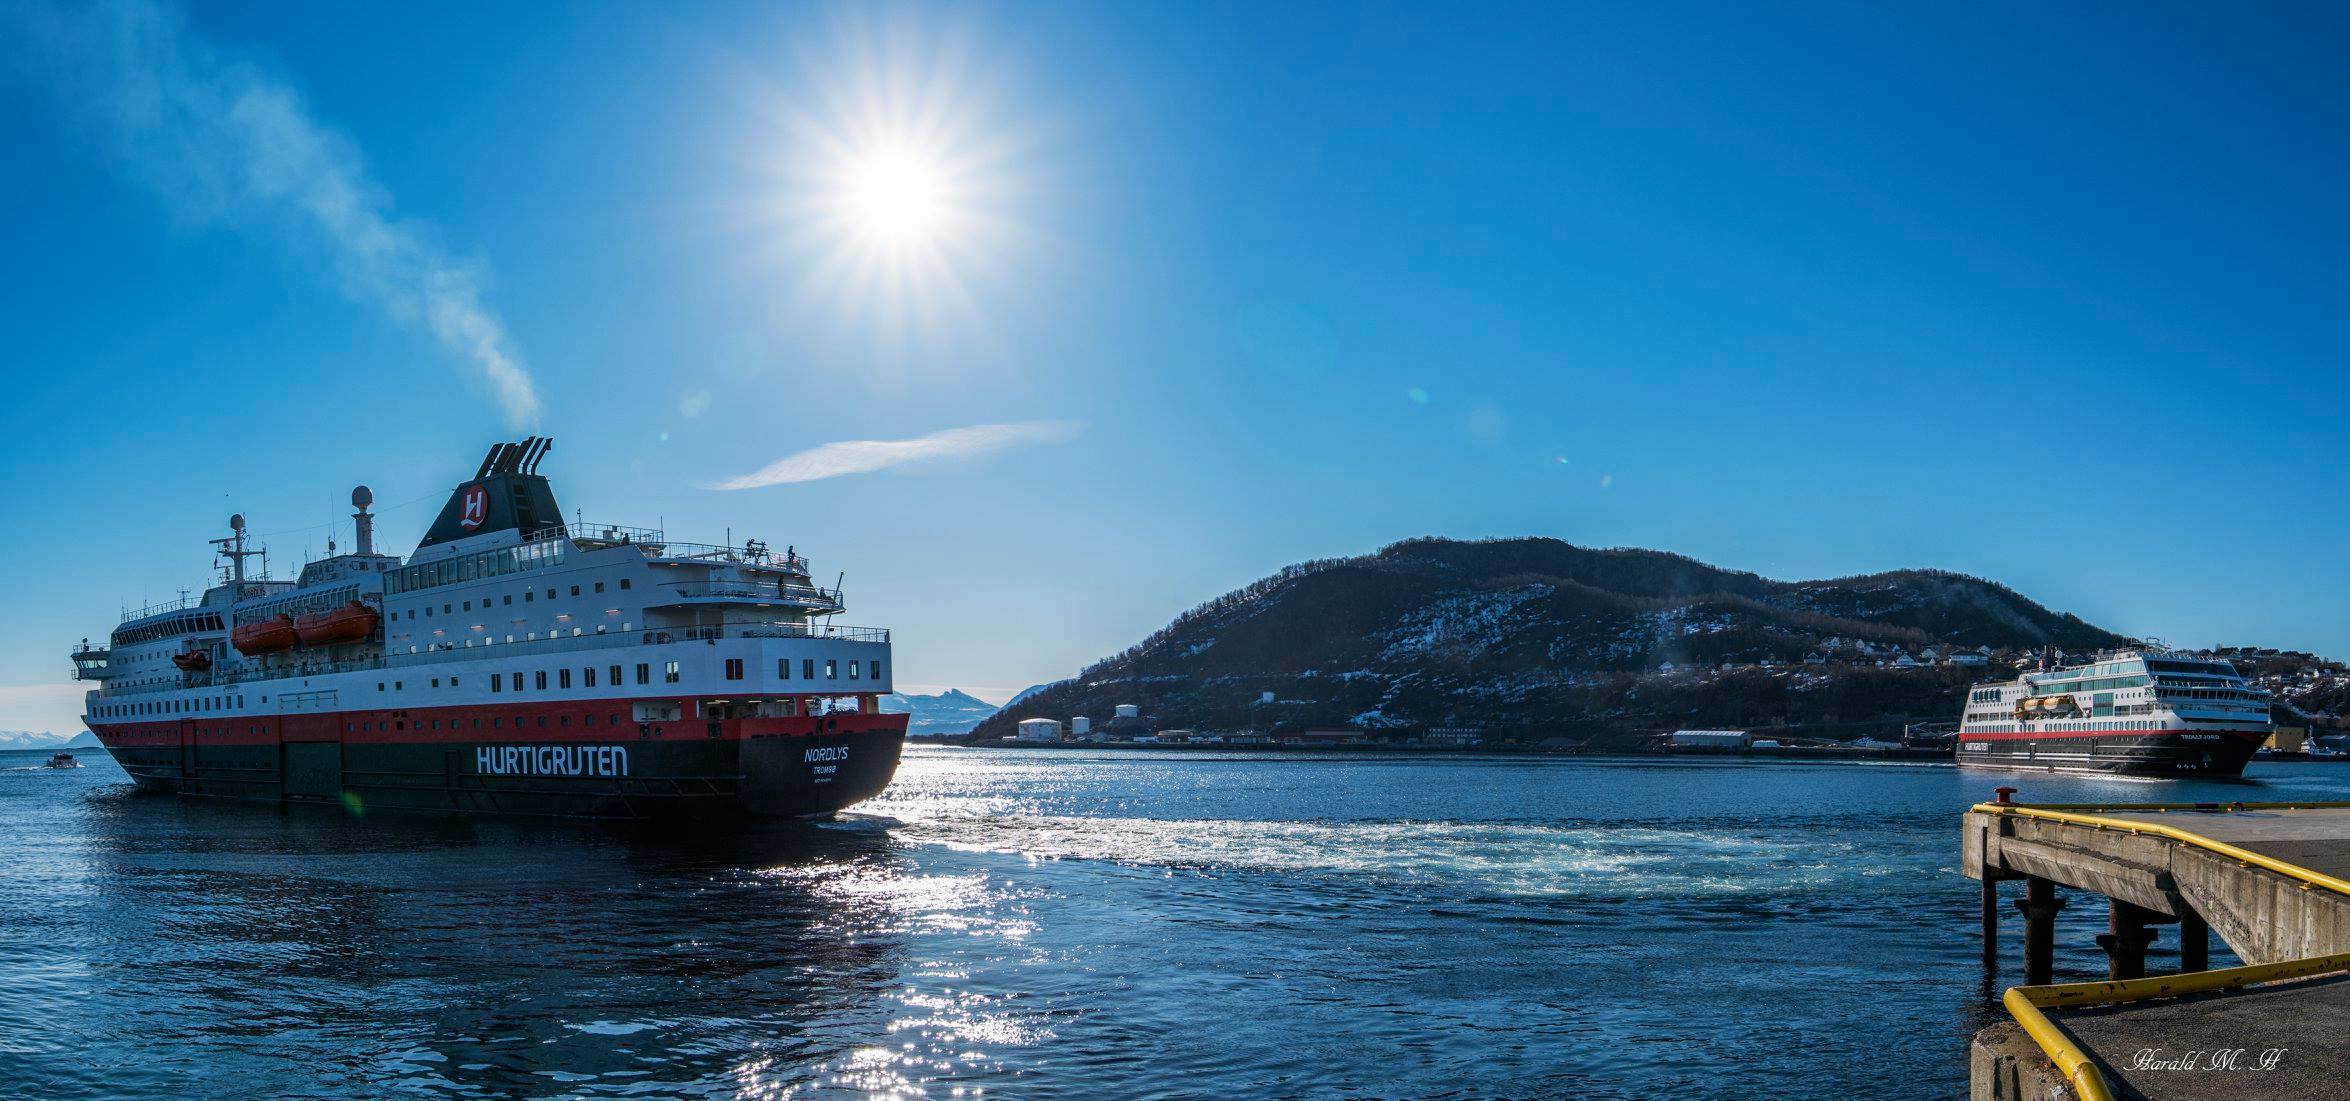 Hurtigruten va faire naviguer ses navires aux déchets de poissons. © Harald Mikal Halvorsen, Facebook